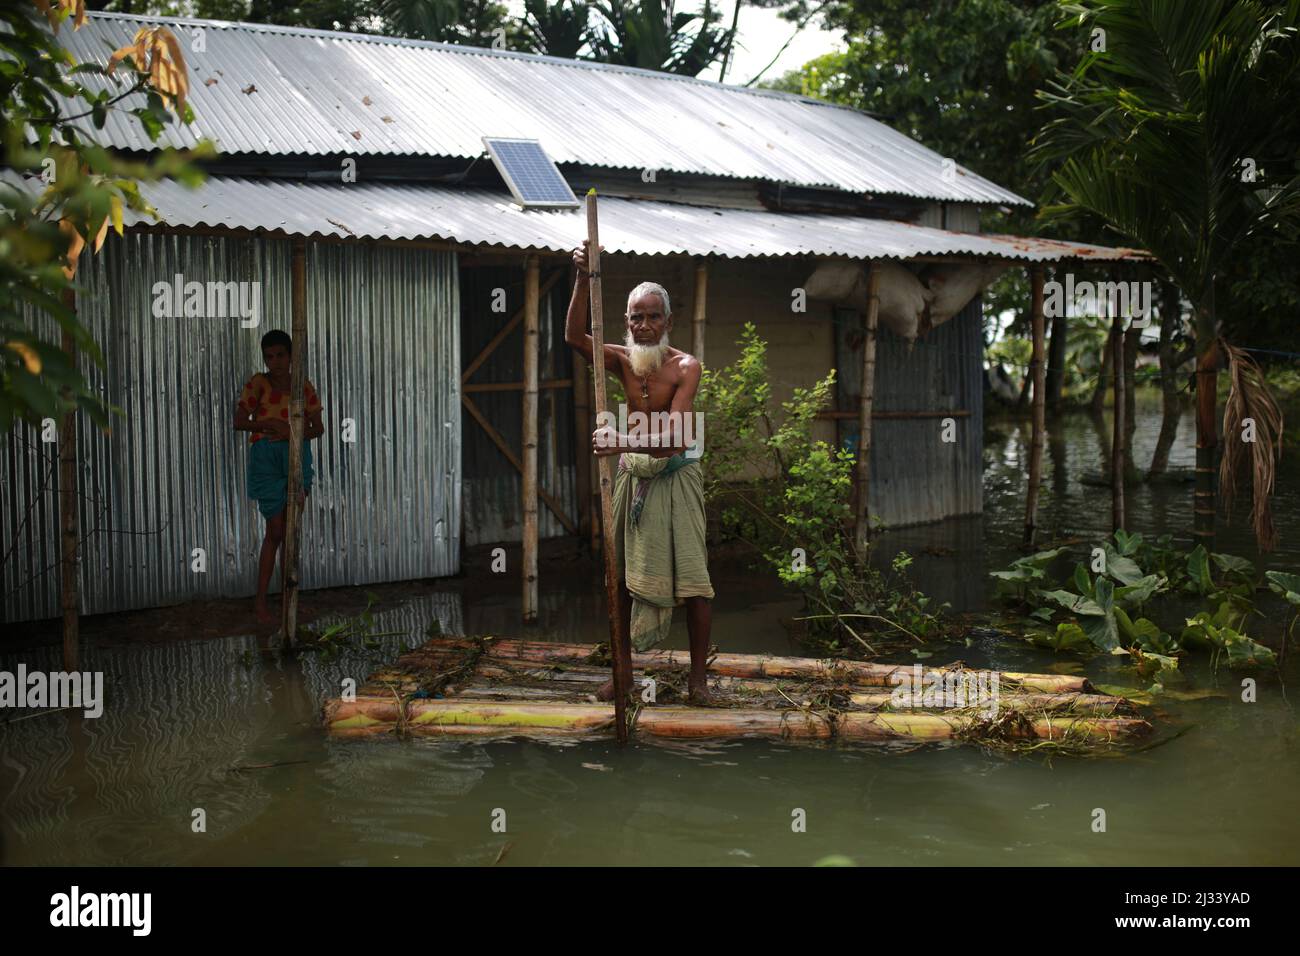 Les populations touchées par les inondations sont observées à Sunamganj, dans le nord-est du Bangladesh, le 16 juillet 2020. Chaque année, des millions de personnes touchées par les inondations dues à de fortes pluies et à des cours d'eau débordant dans les parties nord-est et nord-ouest du Bangladesh. De nombreuses personnes sont mortes, déplacées, ont perdu leurs récoltes, leurs maisons, souffrent de nourriture et d'eau potable pure pendant l'inondation de la mousson. Banque D'Images